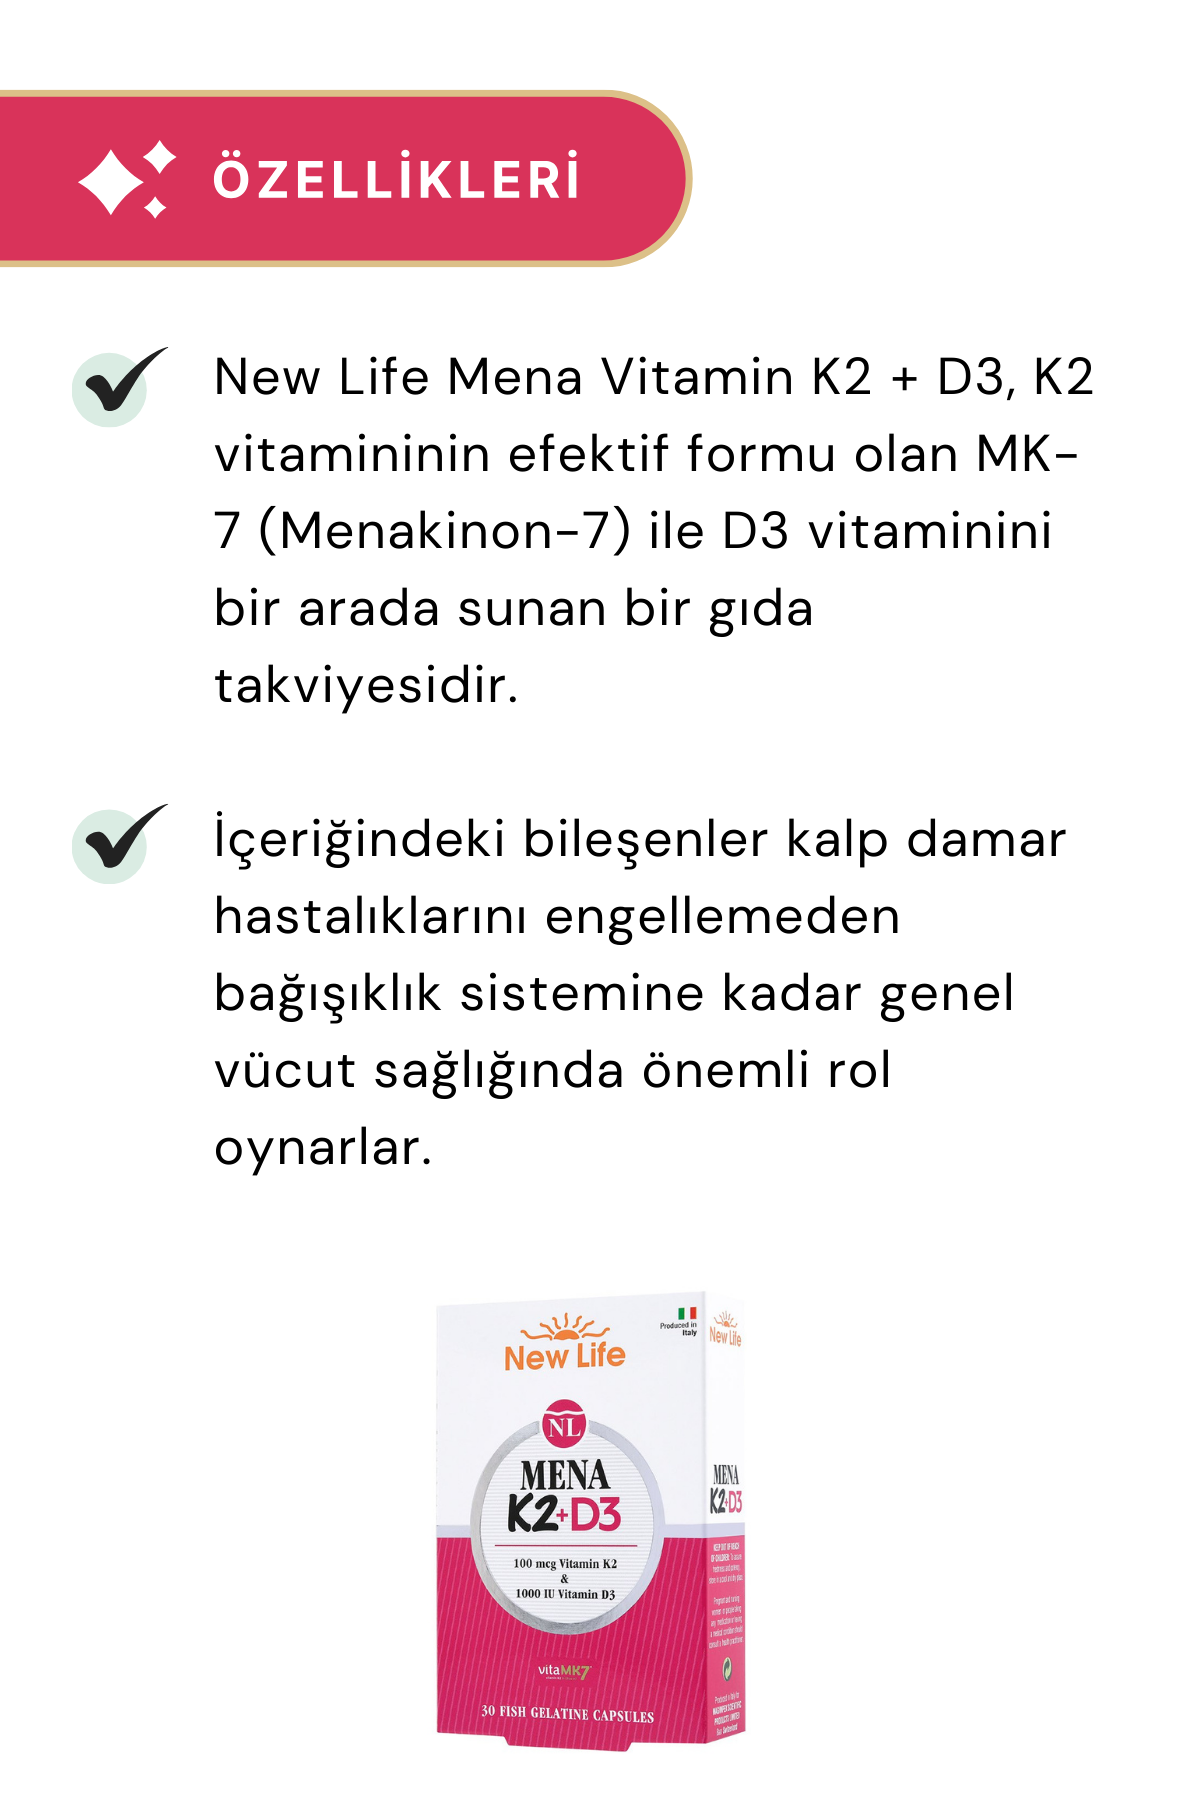 New Life Mena K2 + D3 30 Kapsül 6'lı Paket